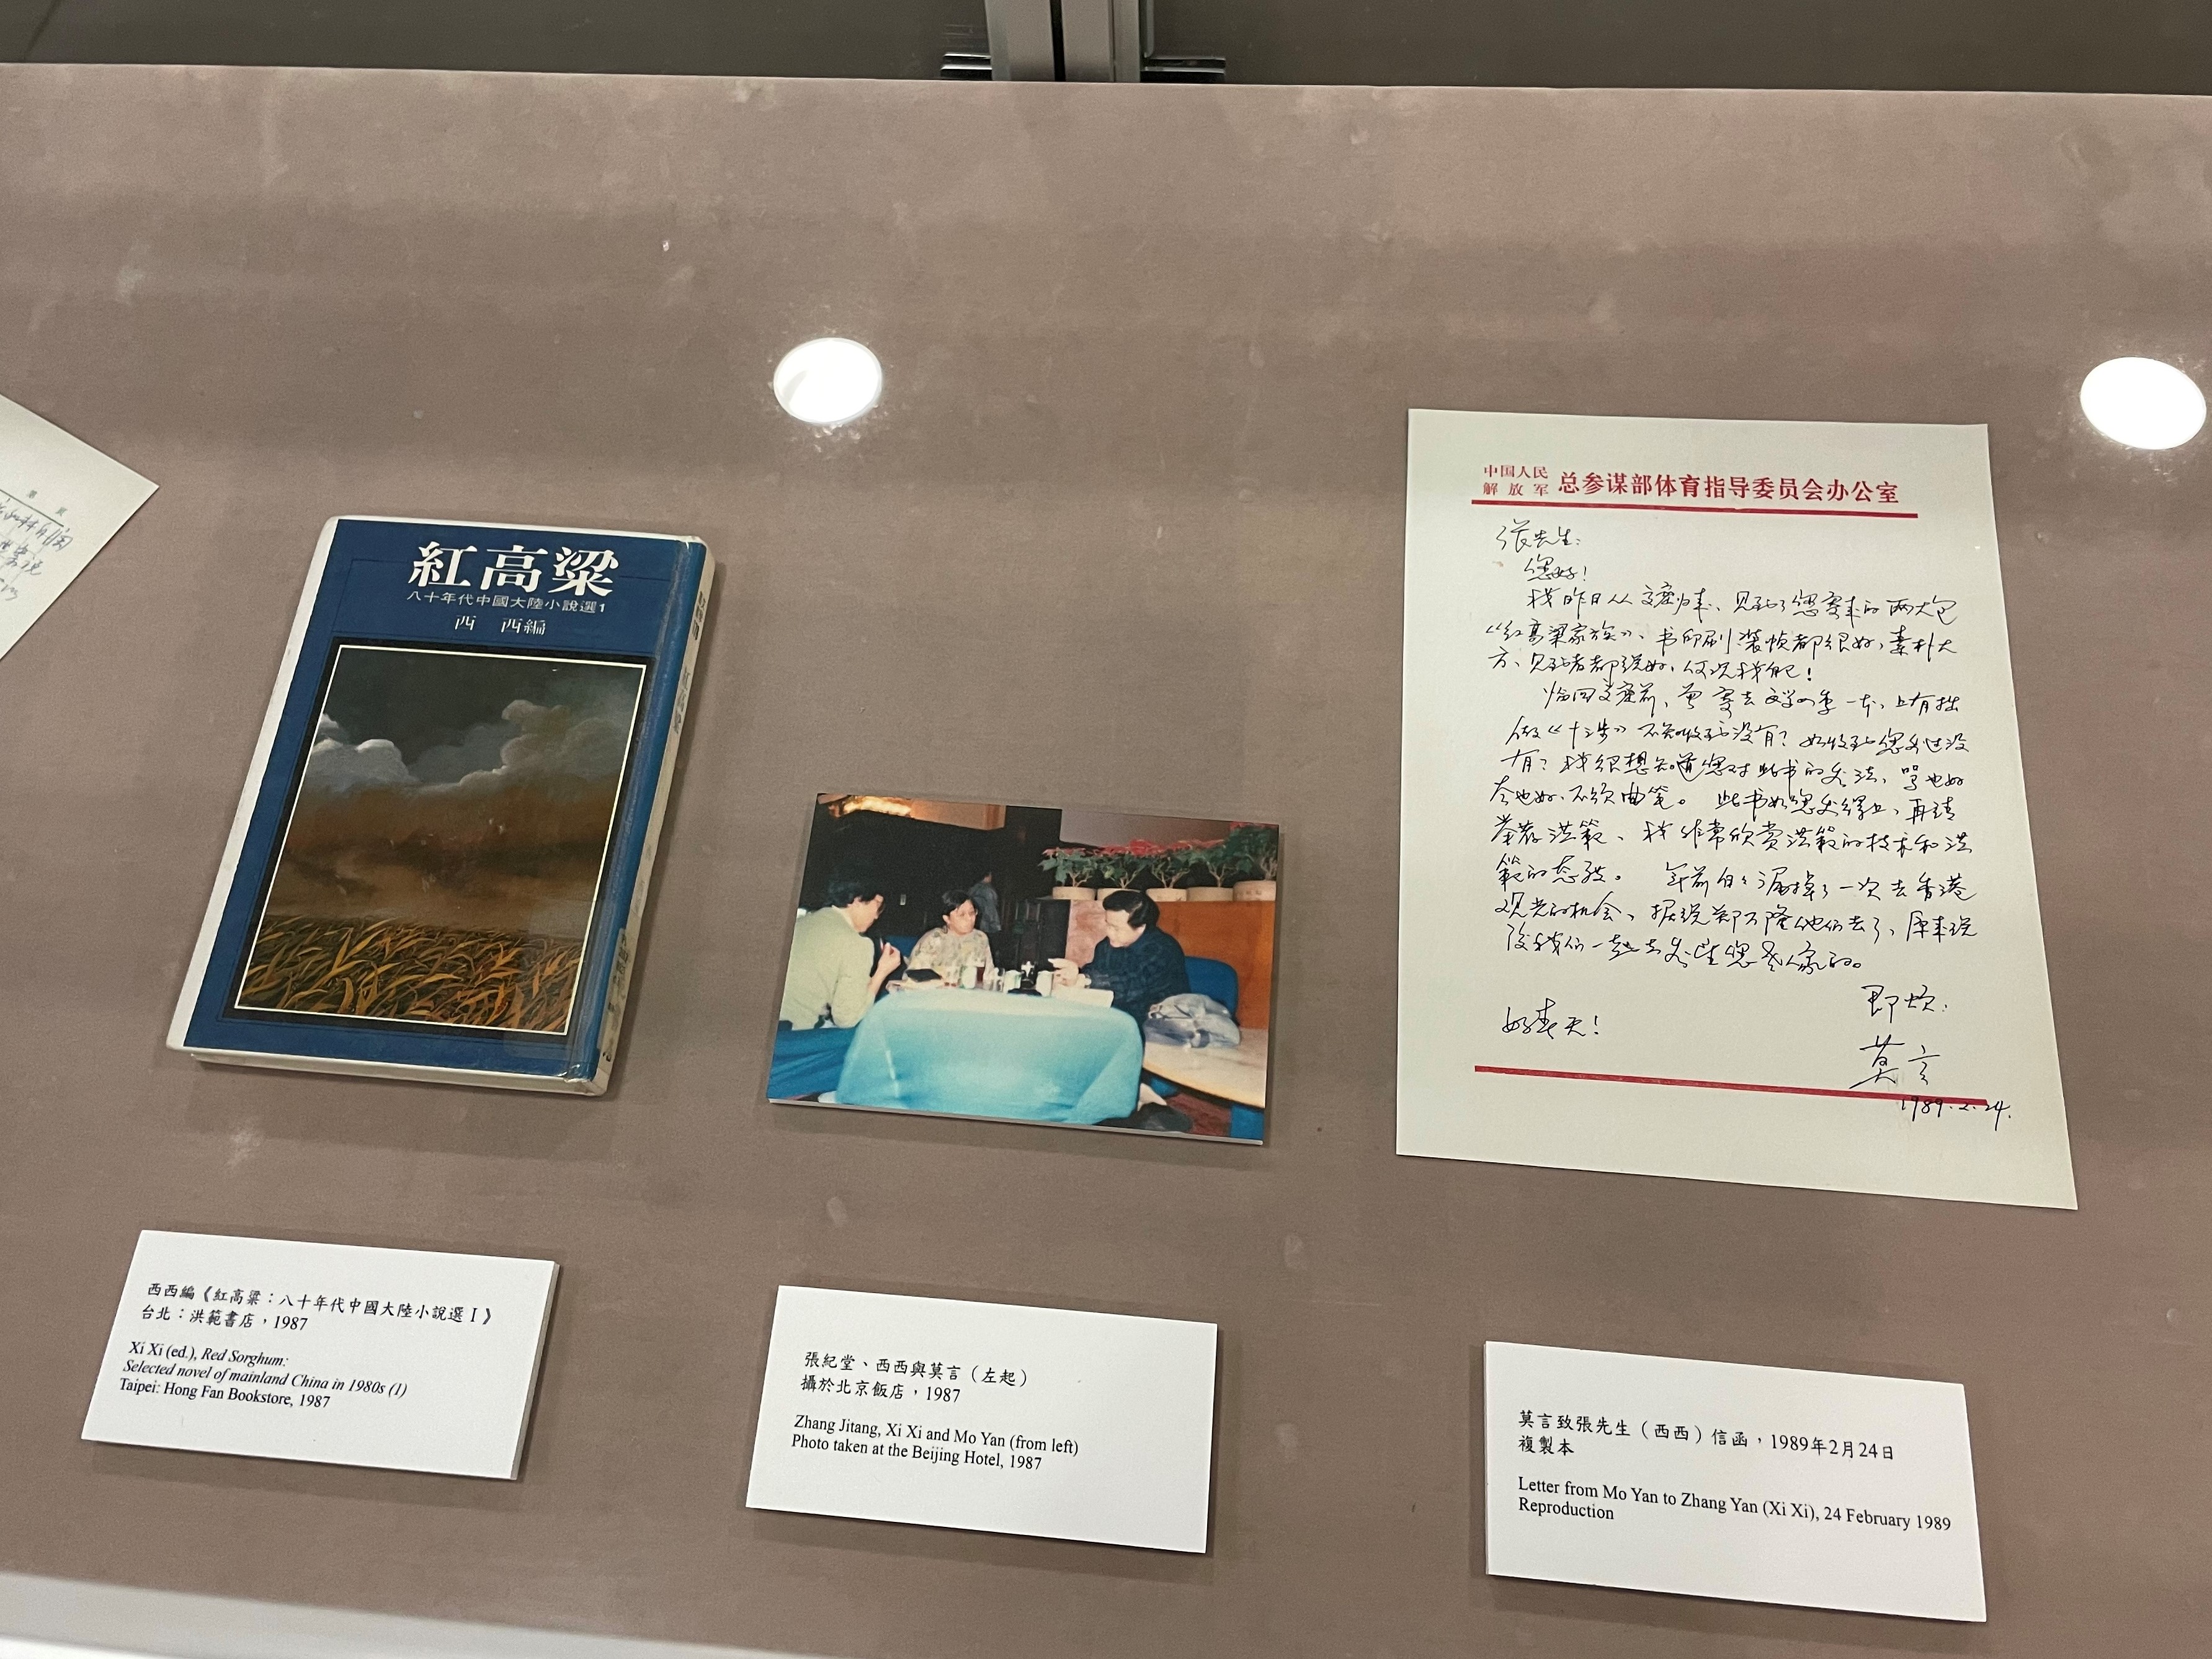 西西編《八十年代中國大陸小說選》、與莫言的合照和書信